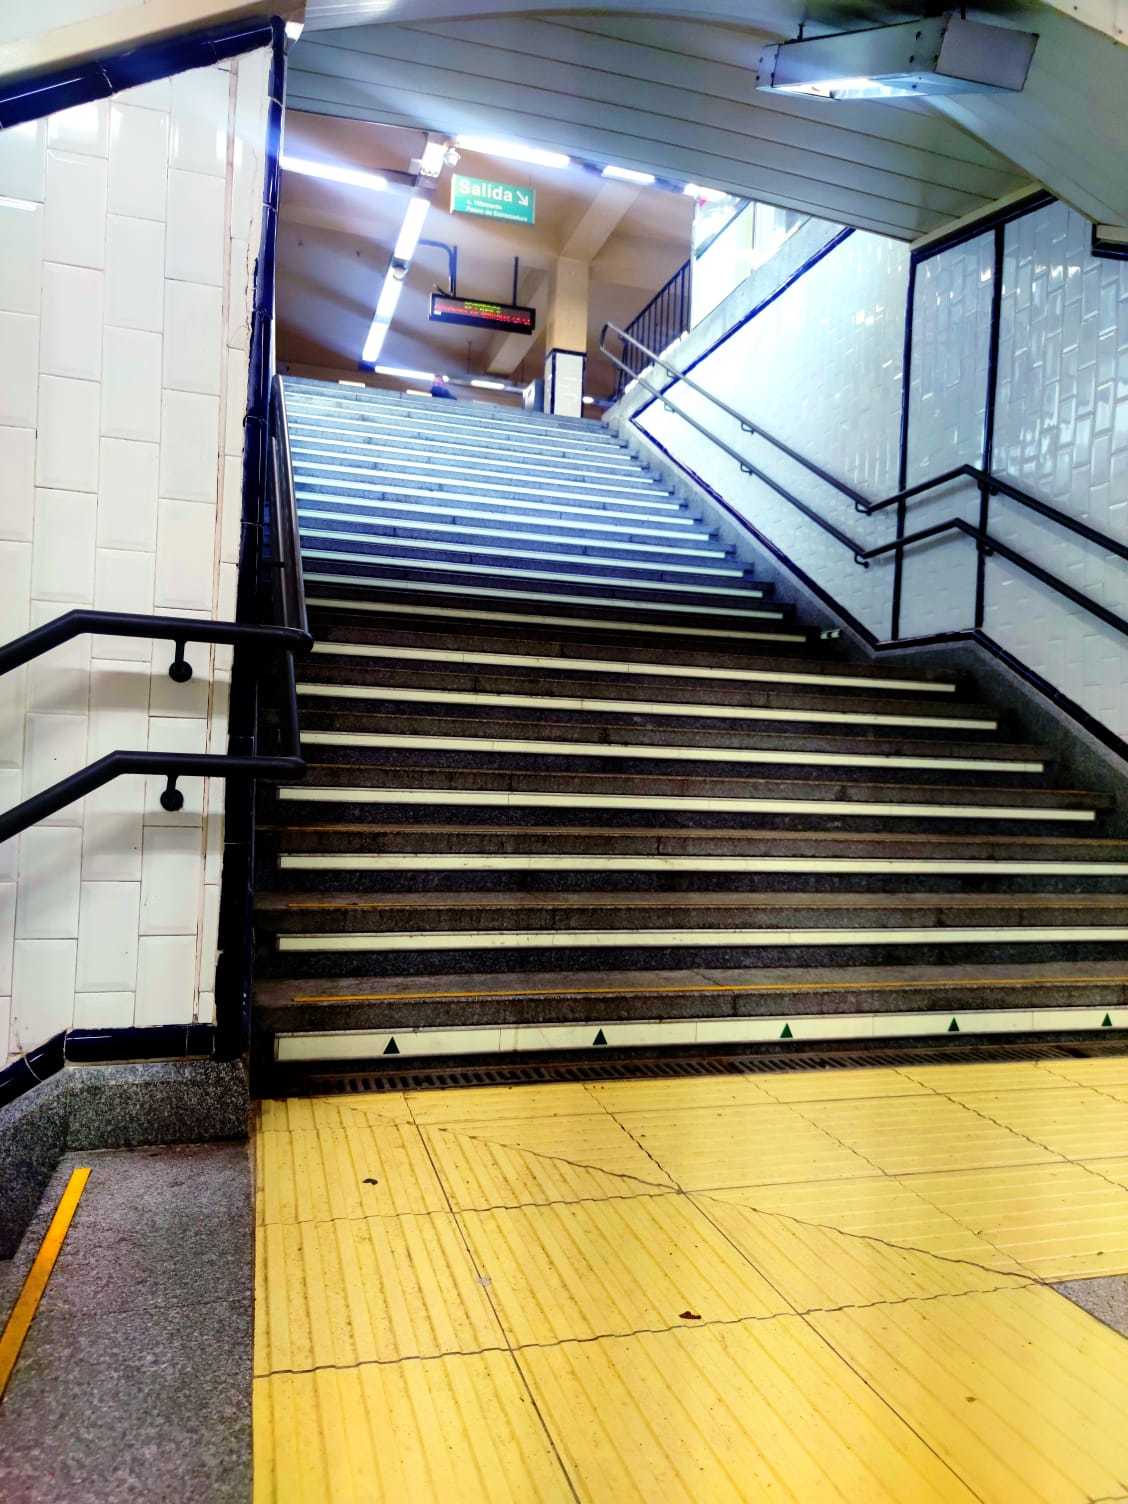 Escaleras del metro por donde cayó la mujer.